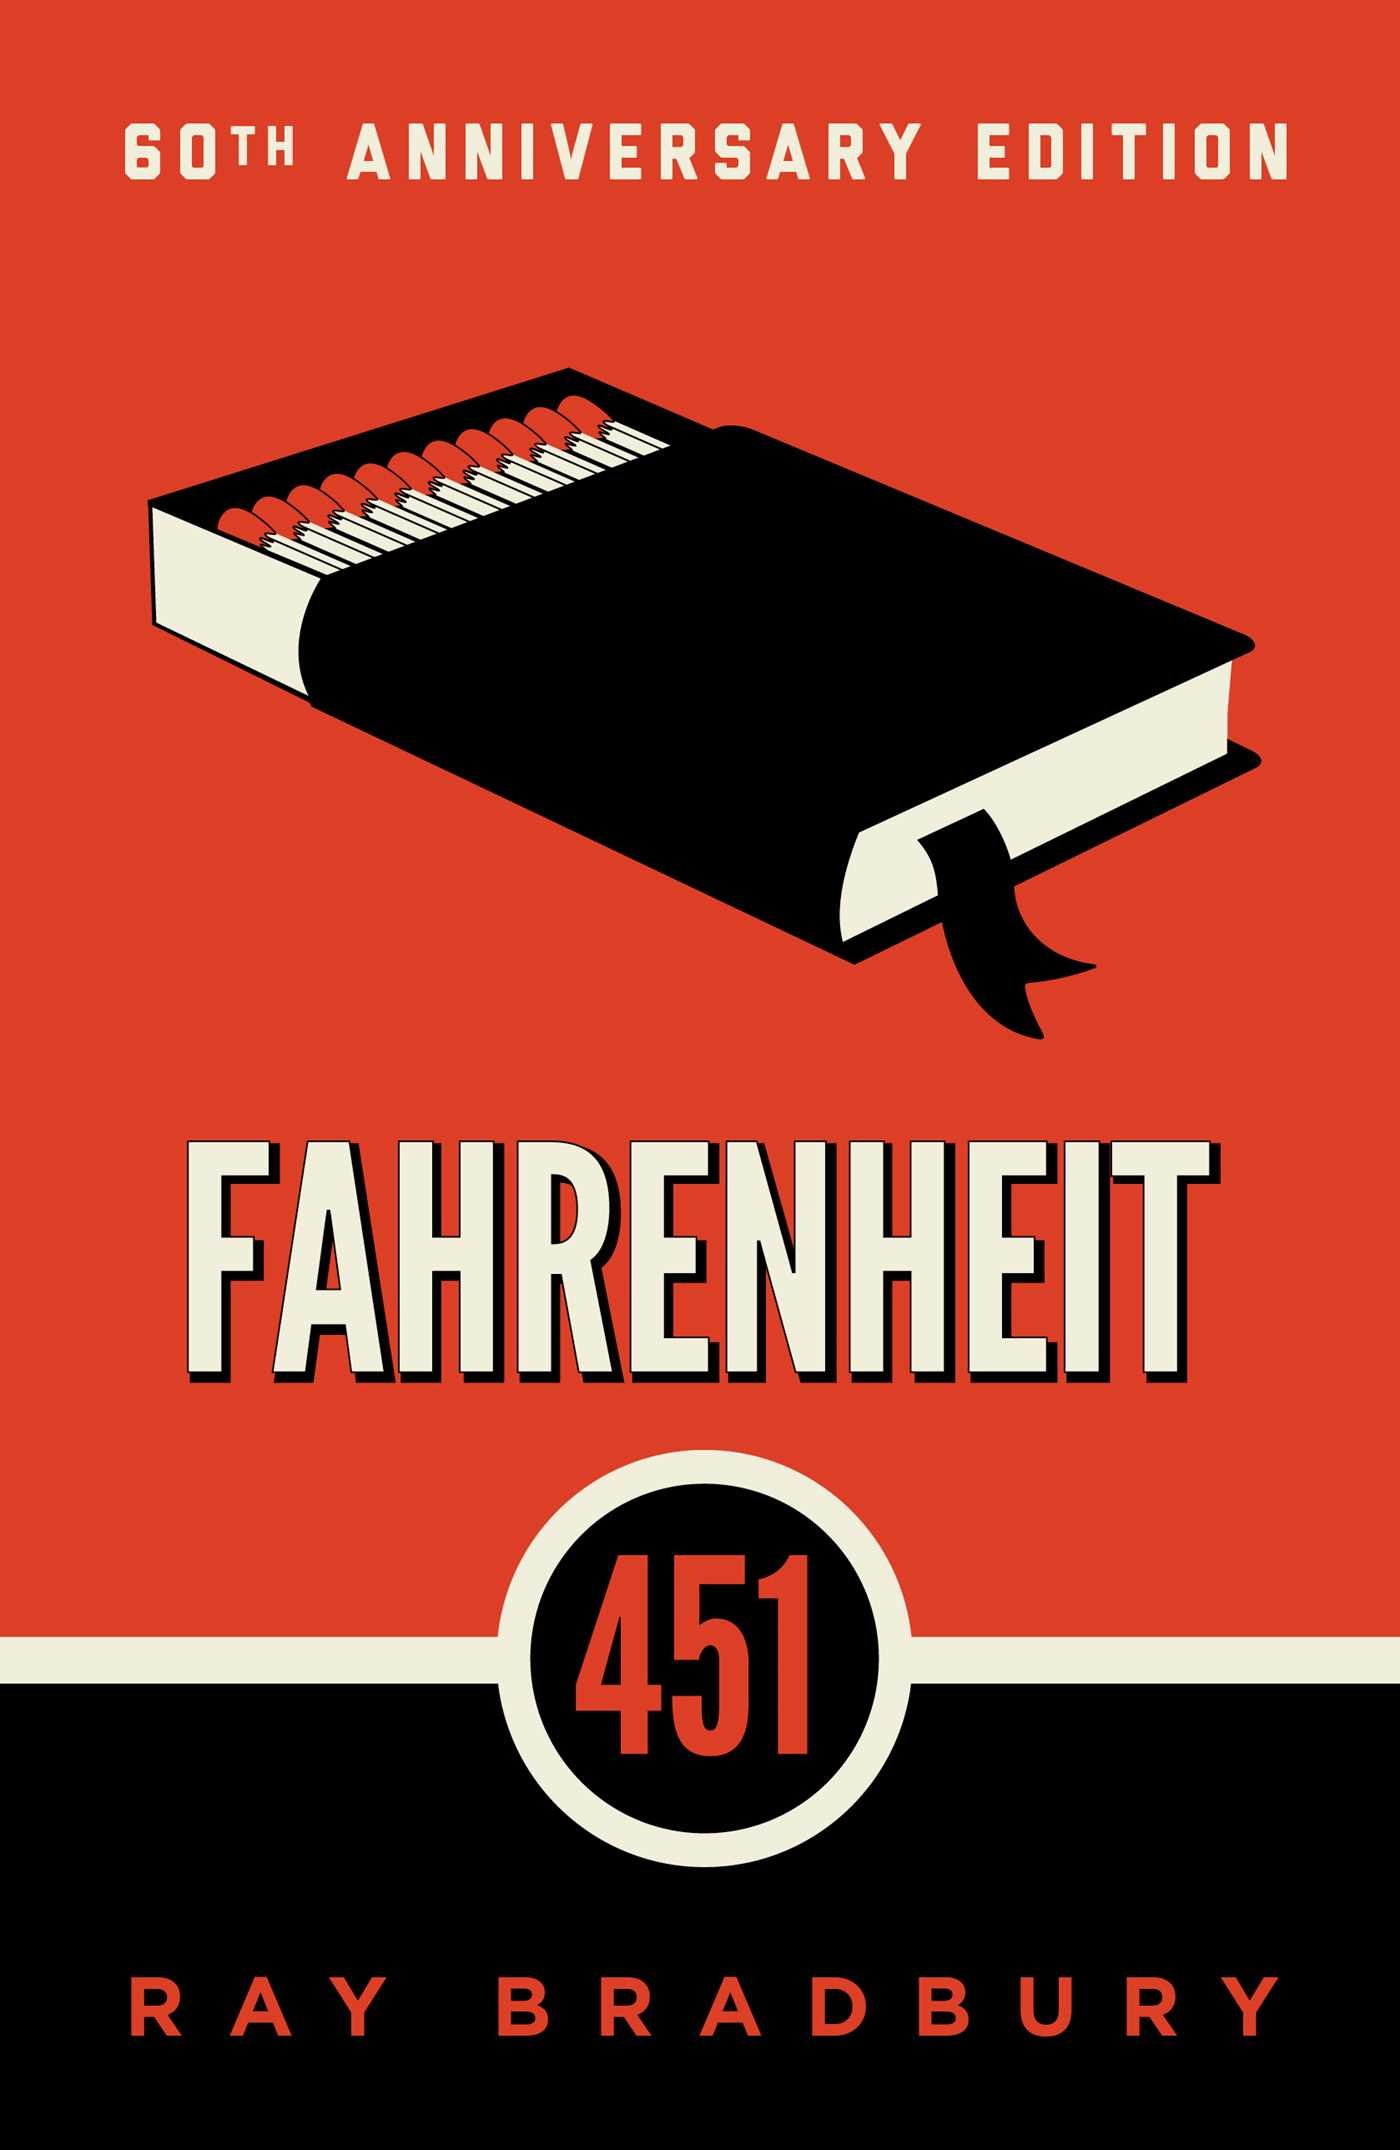 “451 Fahrenheit” by Ray Bradbury